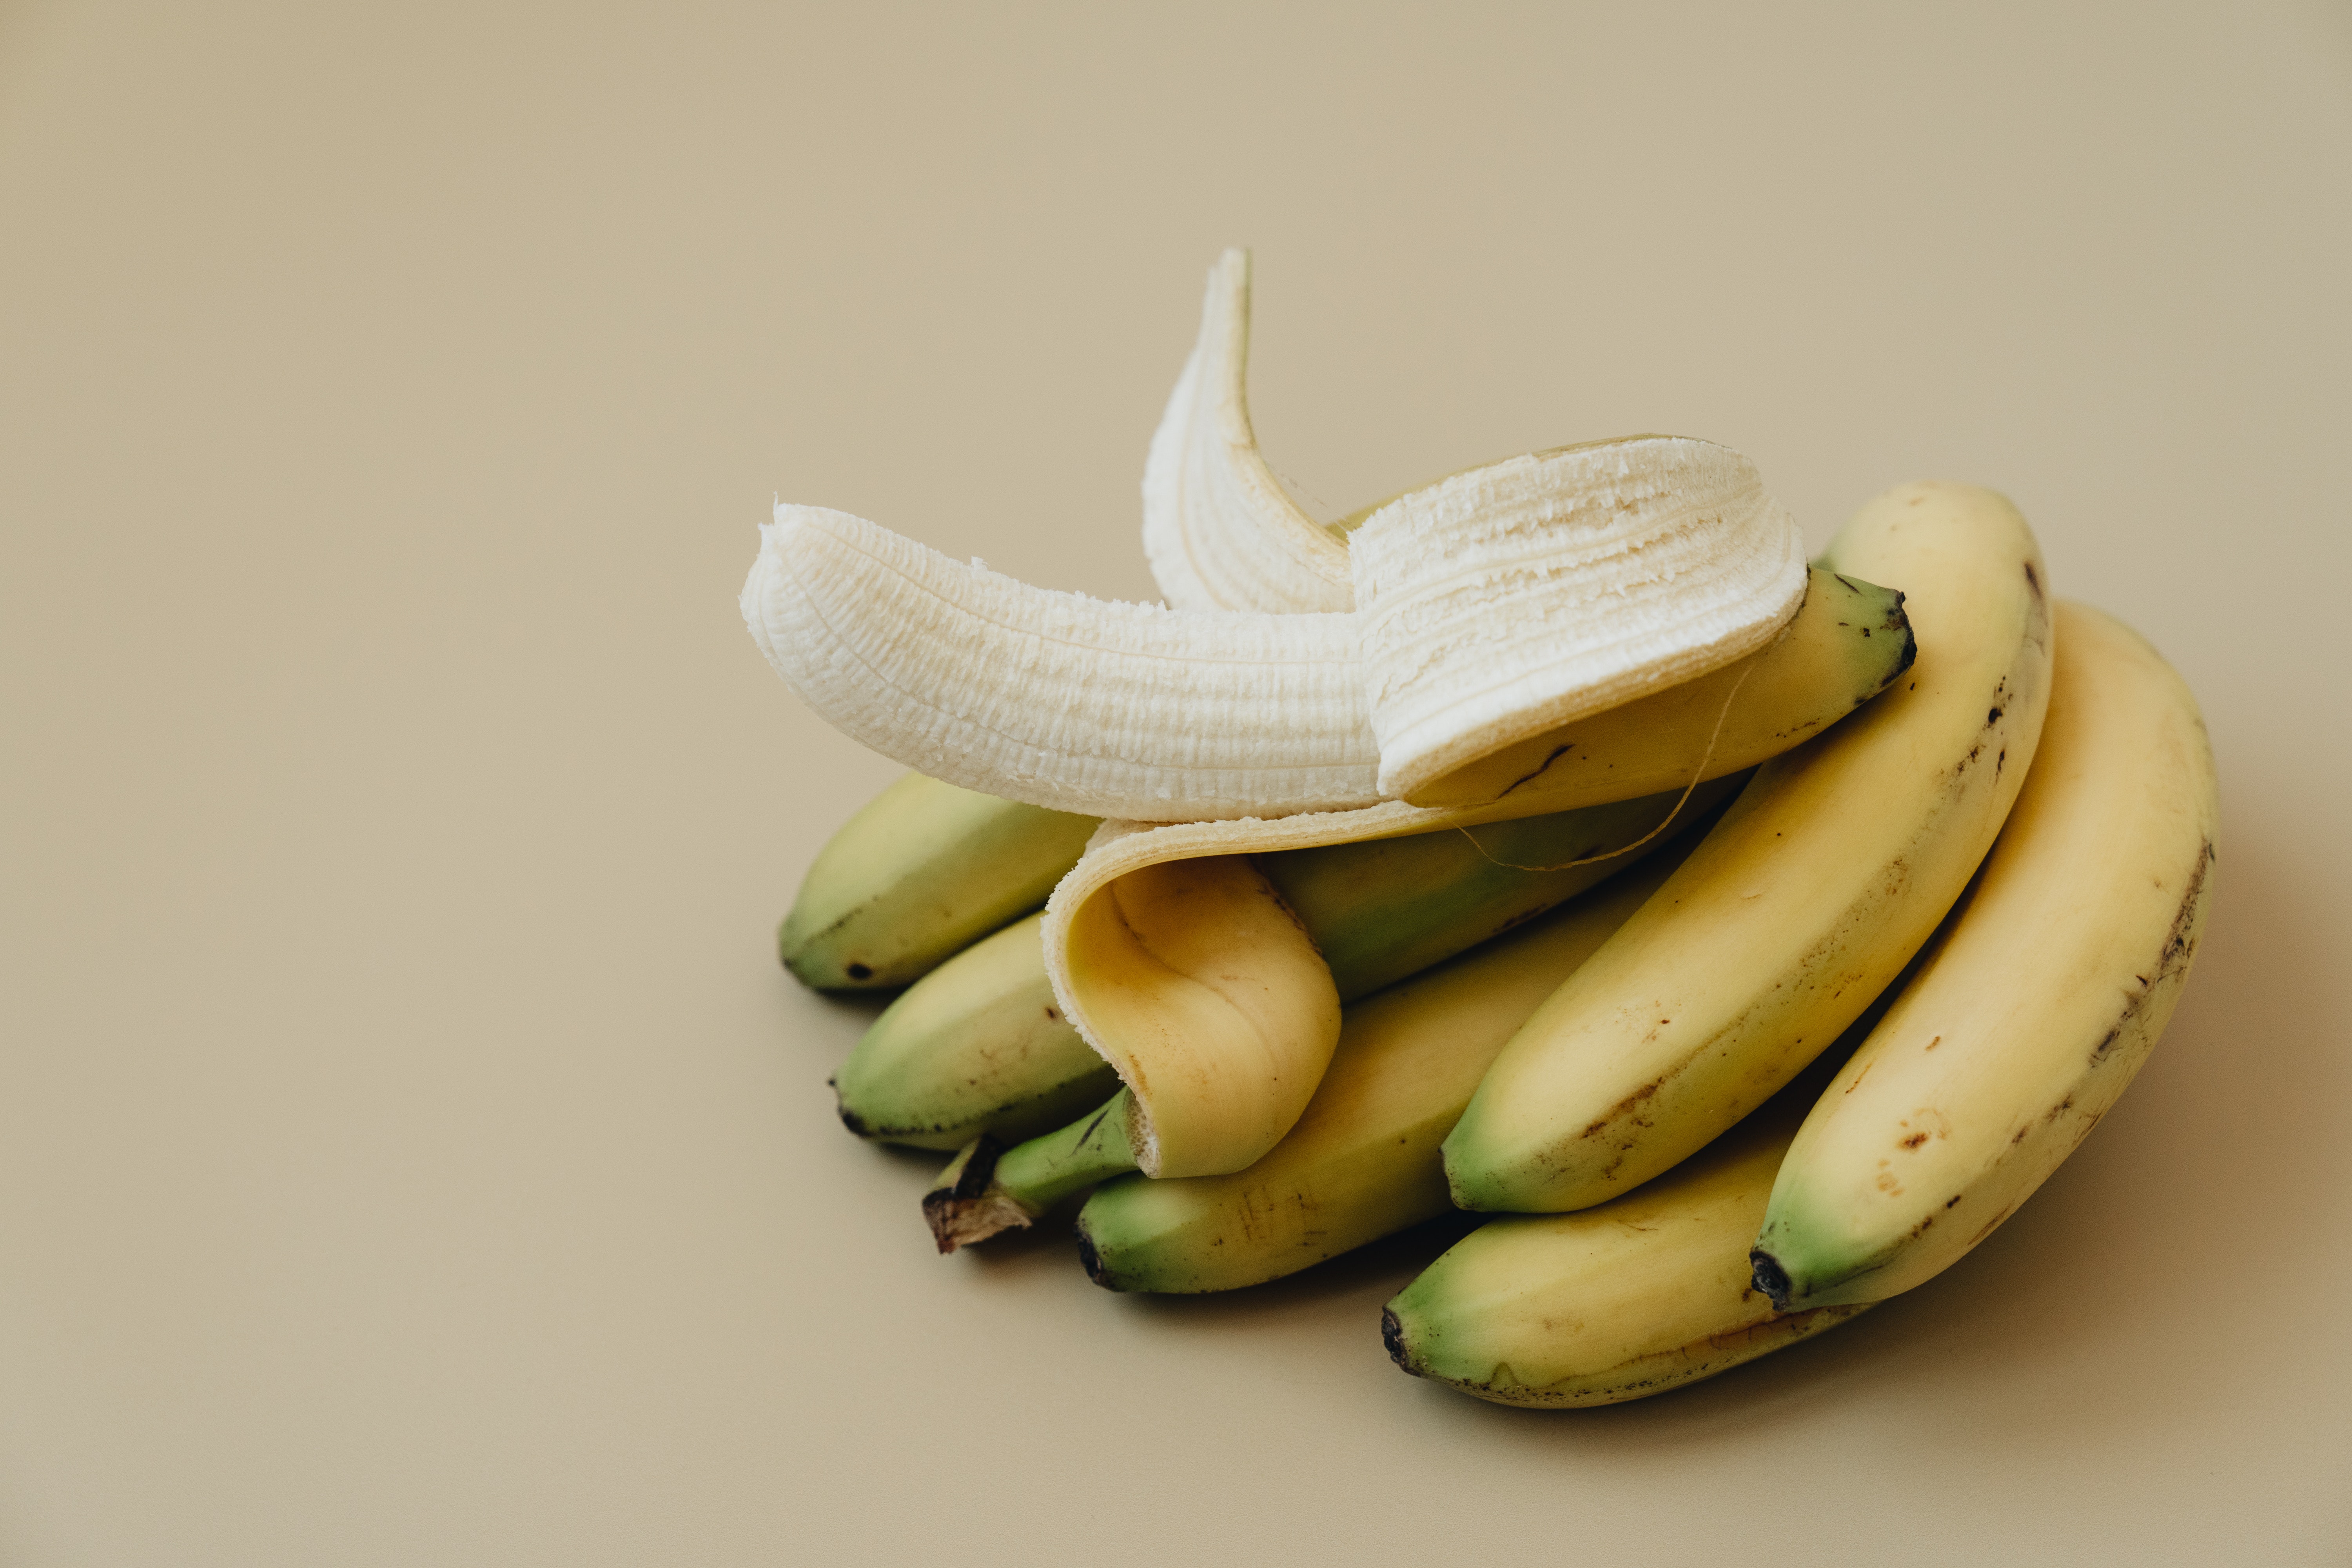 आपण केळी रोज खाऊ शकतो. शरीराचे वजन वाढवण्यात आणि पोषक तत्वांची कमतरता भरून काढण्यात याचा मोठा हातभार असतो.